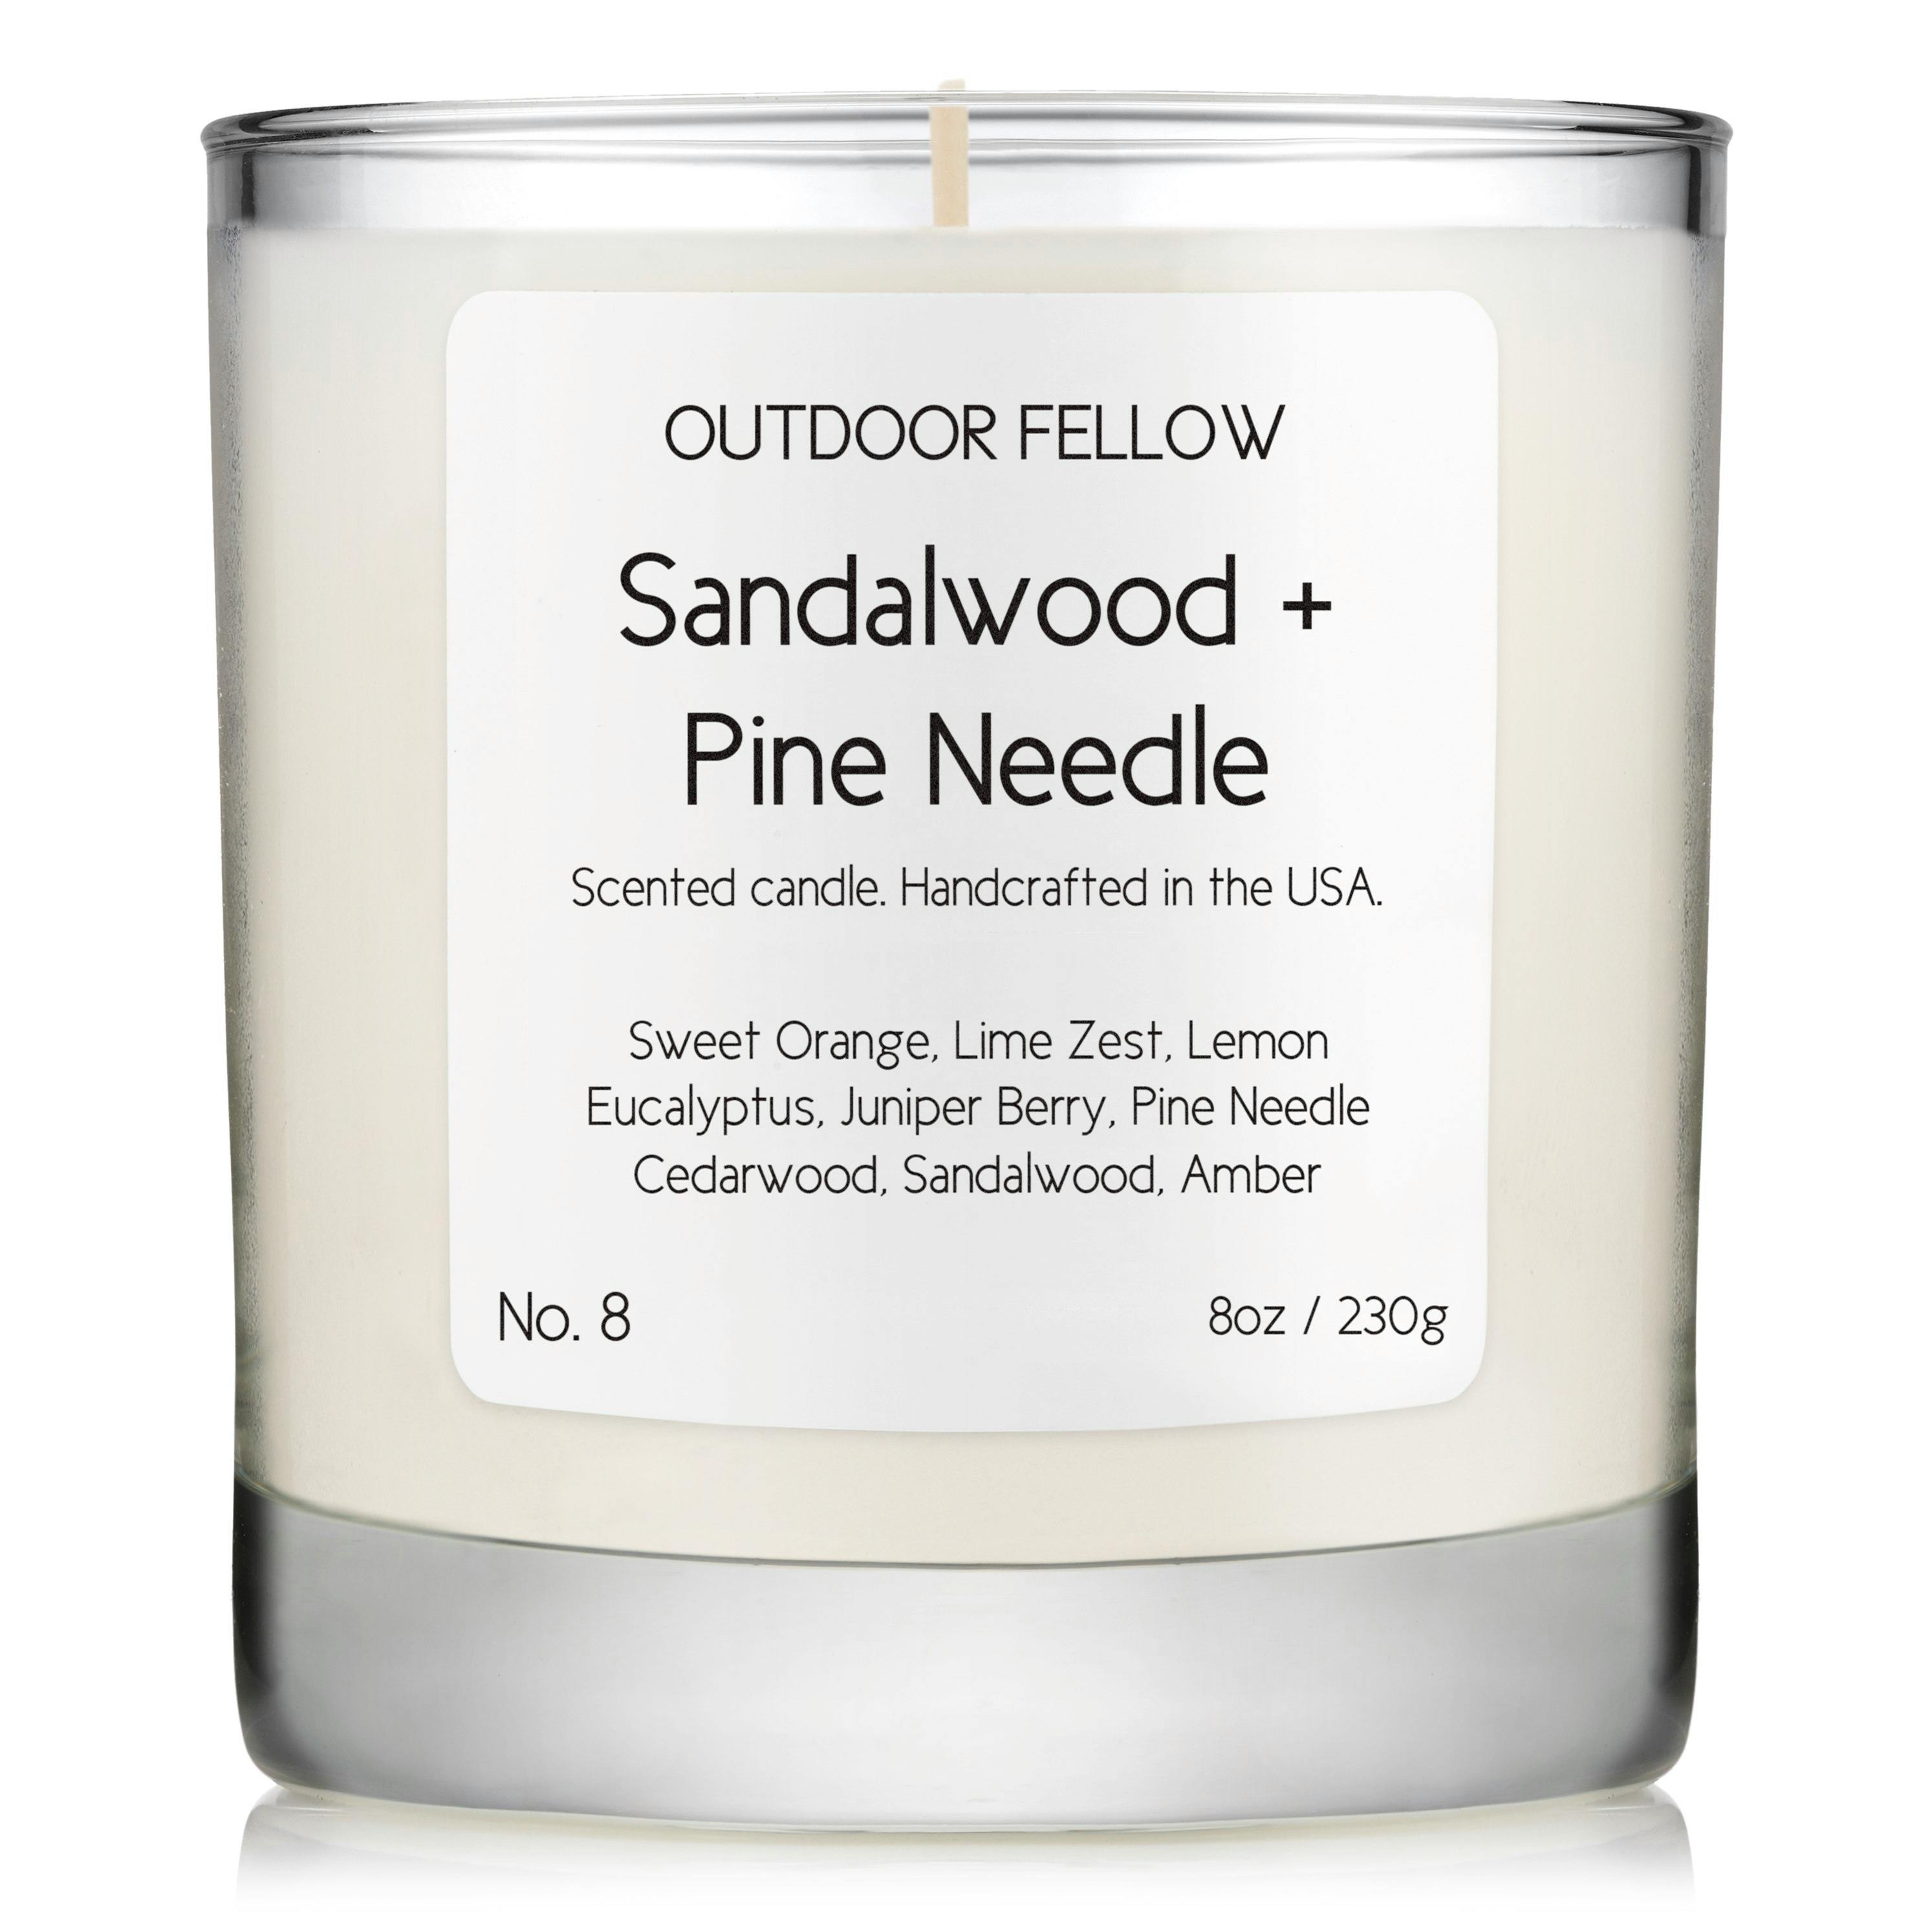 No. 8 Sandalwood + Pine Needle